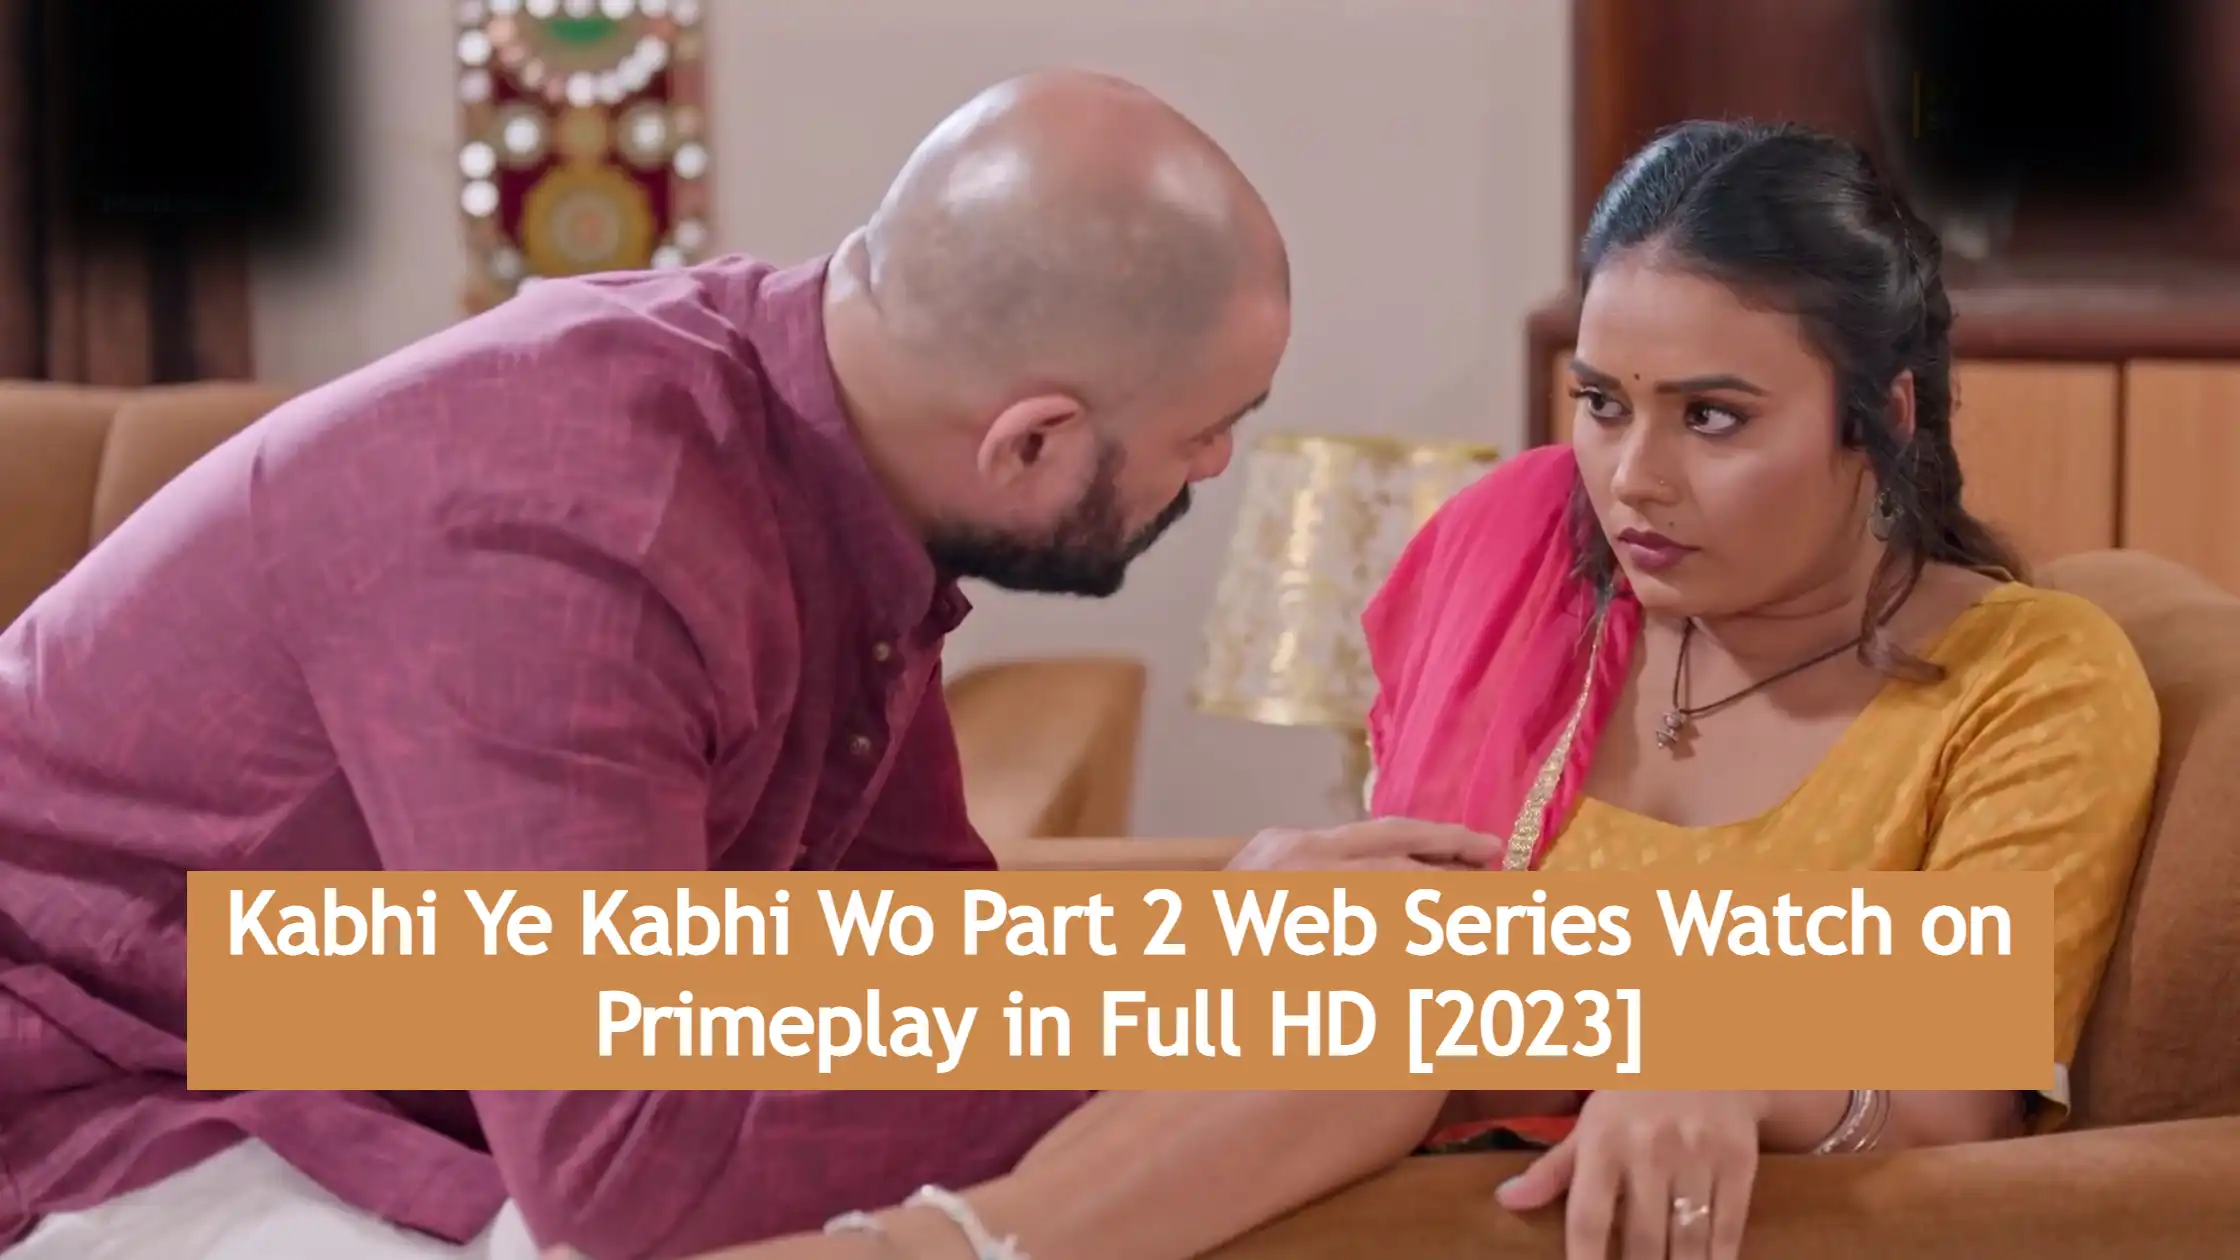 Kabhi Ye Kabhi Wo Part 2 Web Series Watch on Primeplay in Full HD [2023]